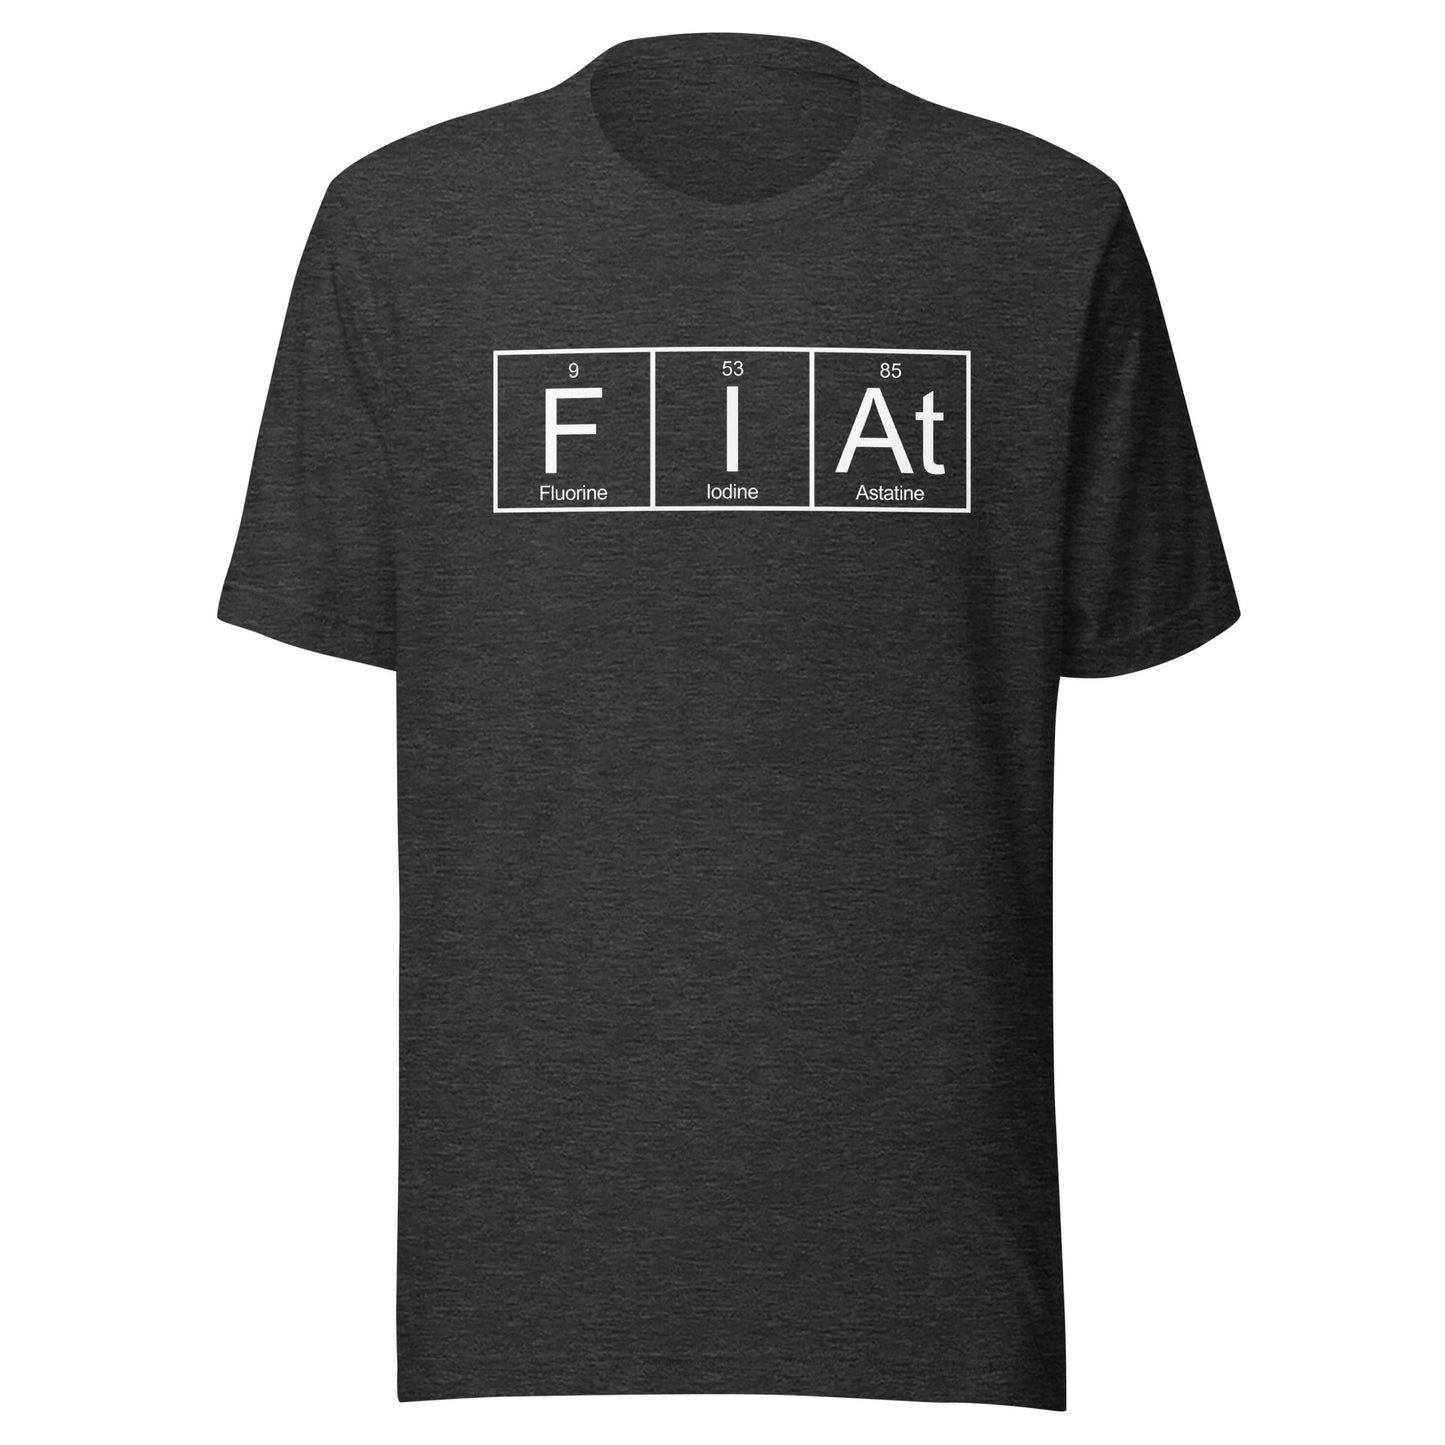 Catholic t-shirt, Fiat